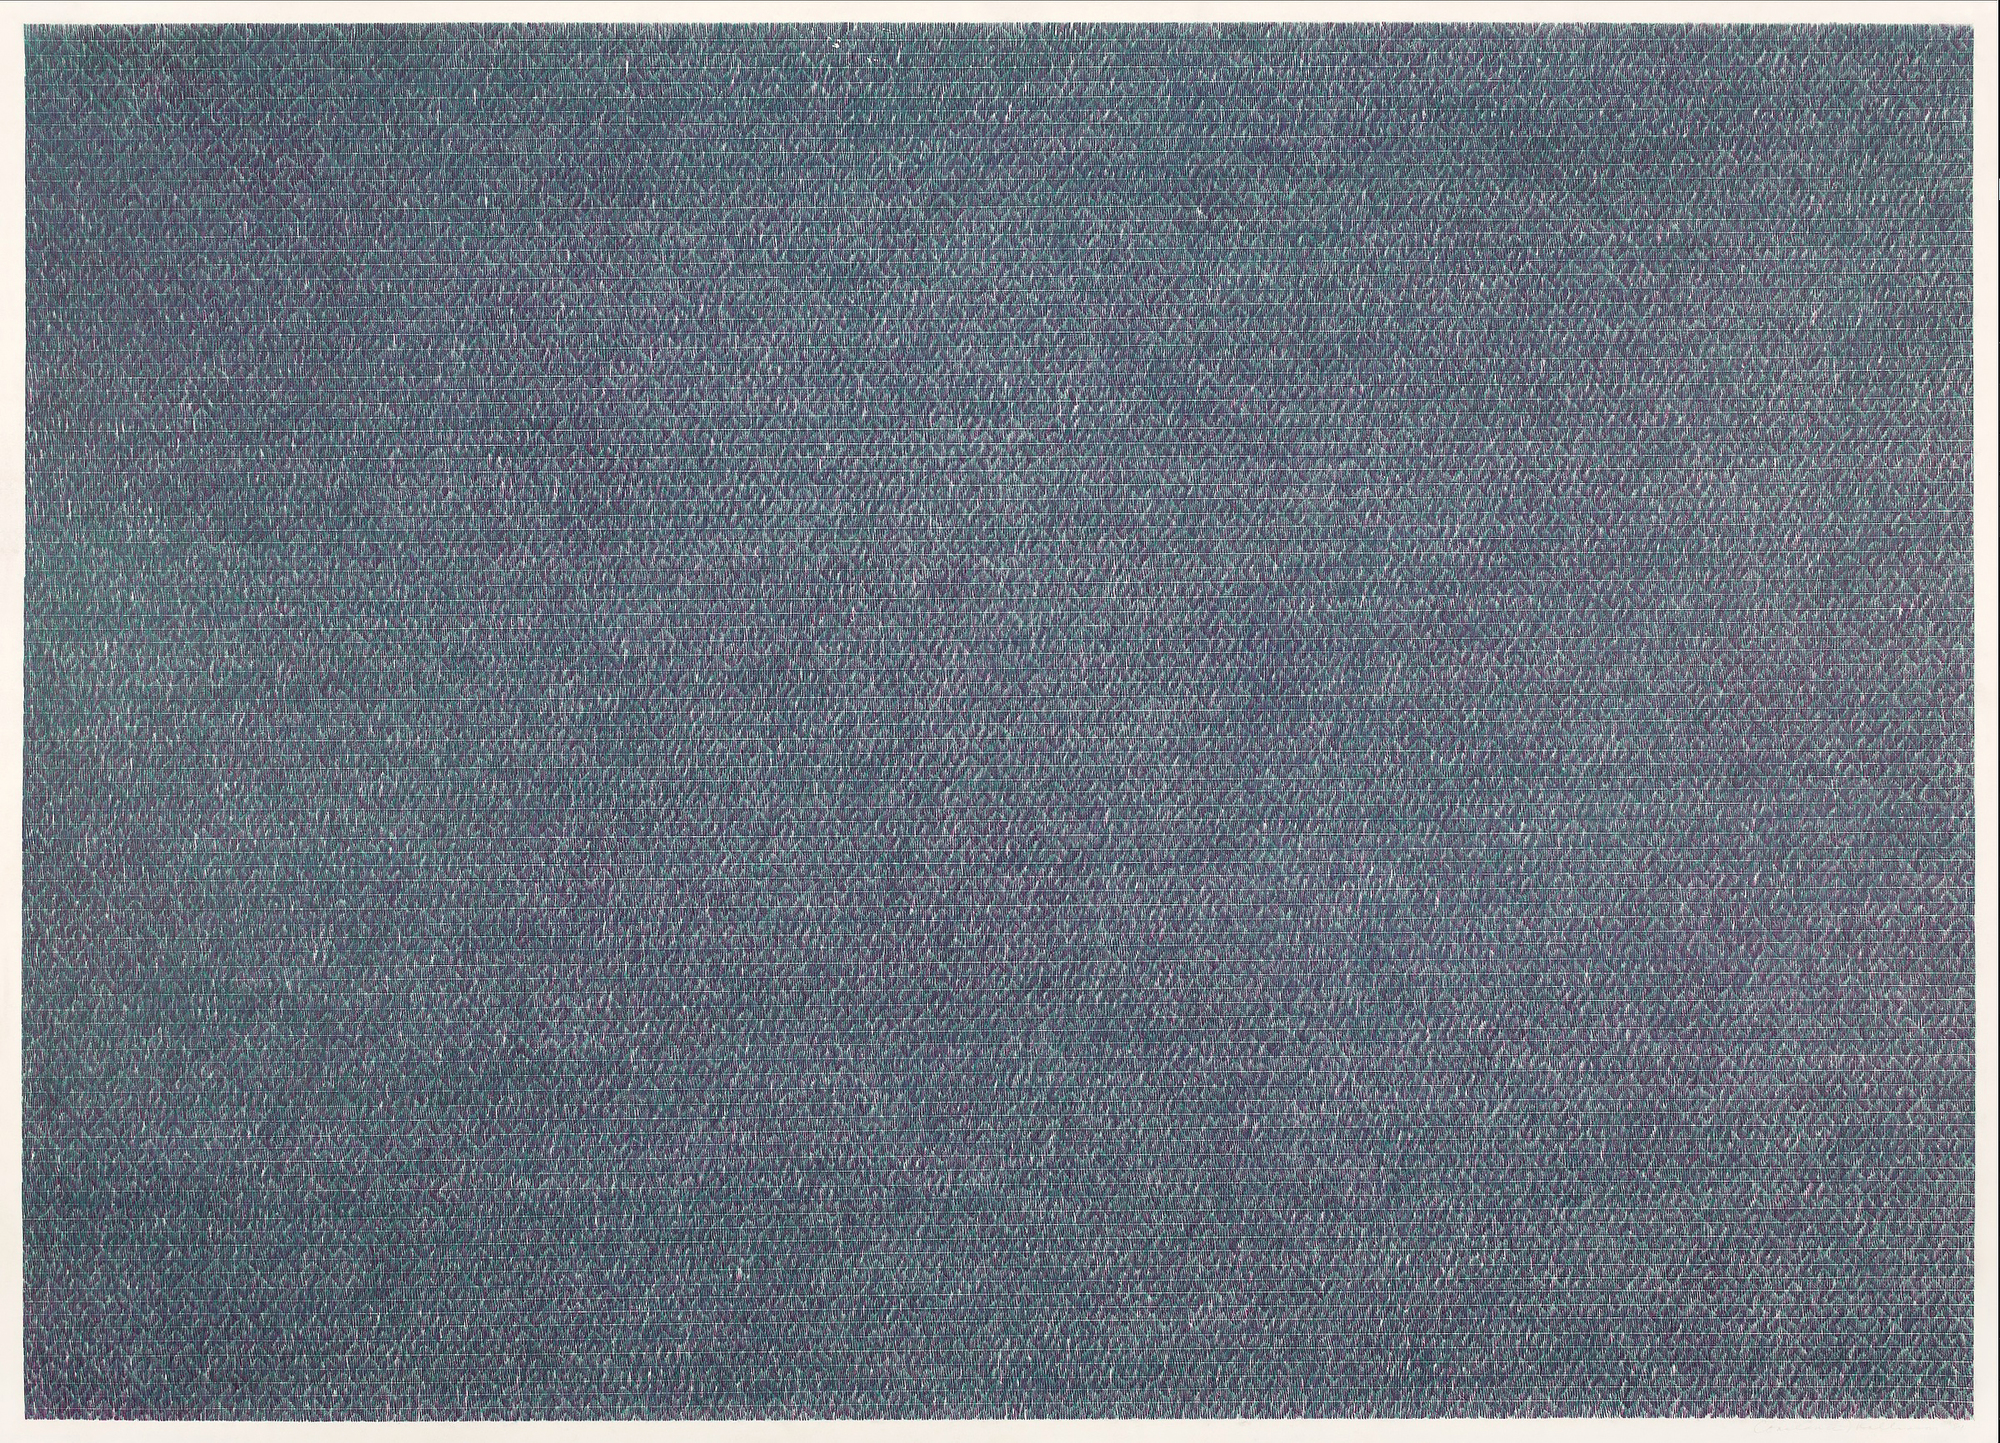 康斯坦斯-马林森 - 无题#12 - 纸上彩色铅笔 - 26 x 36英寸。